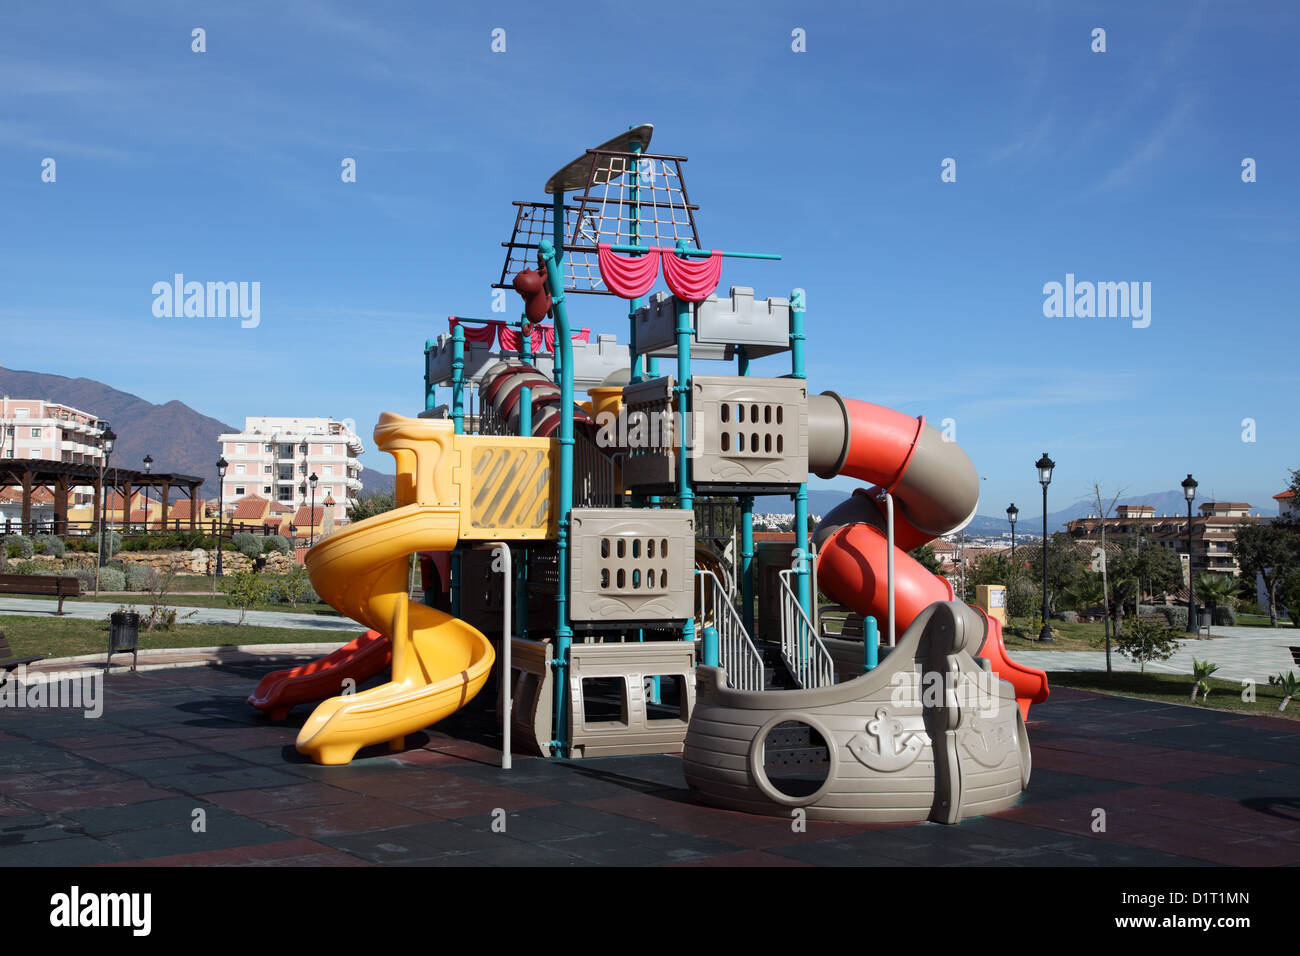 Playground ship immagini e fotografie stock ad alta risoluzione - Alamy